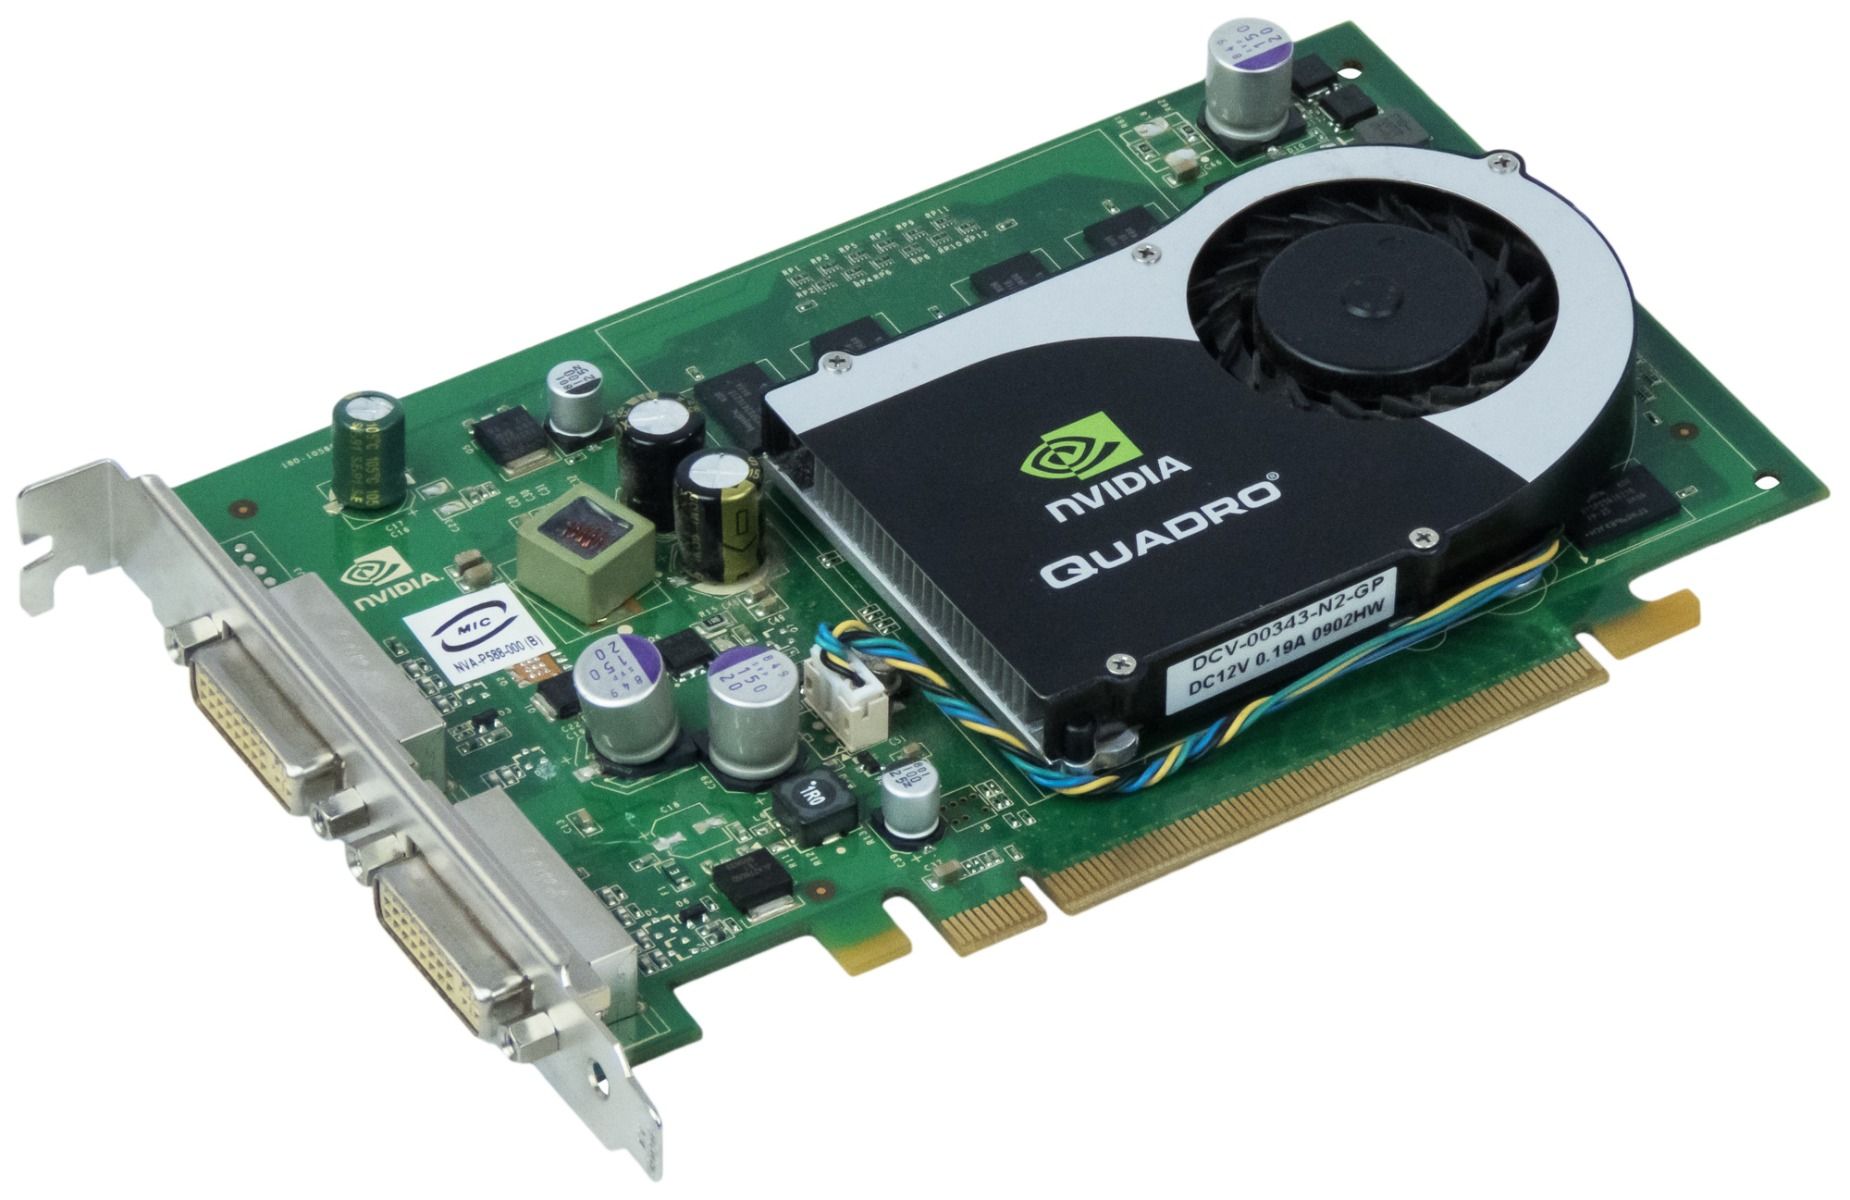 Nvidia QUADRO FX 570 256MB DDR2 